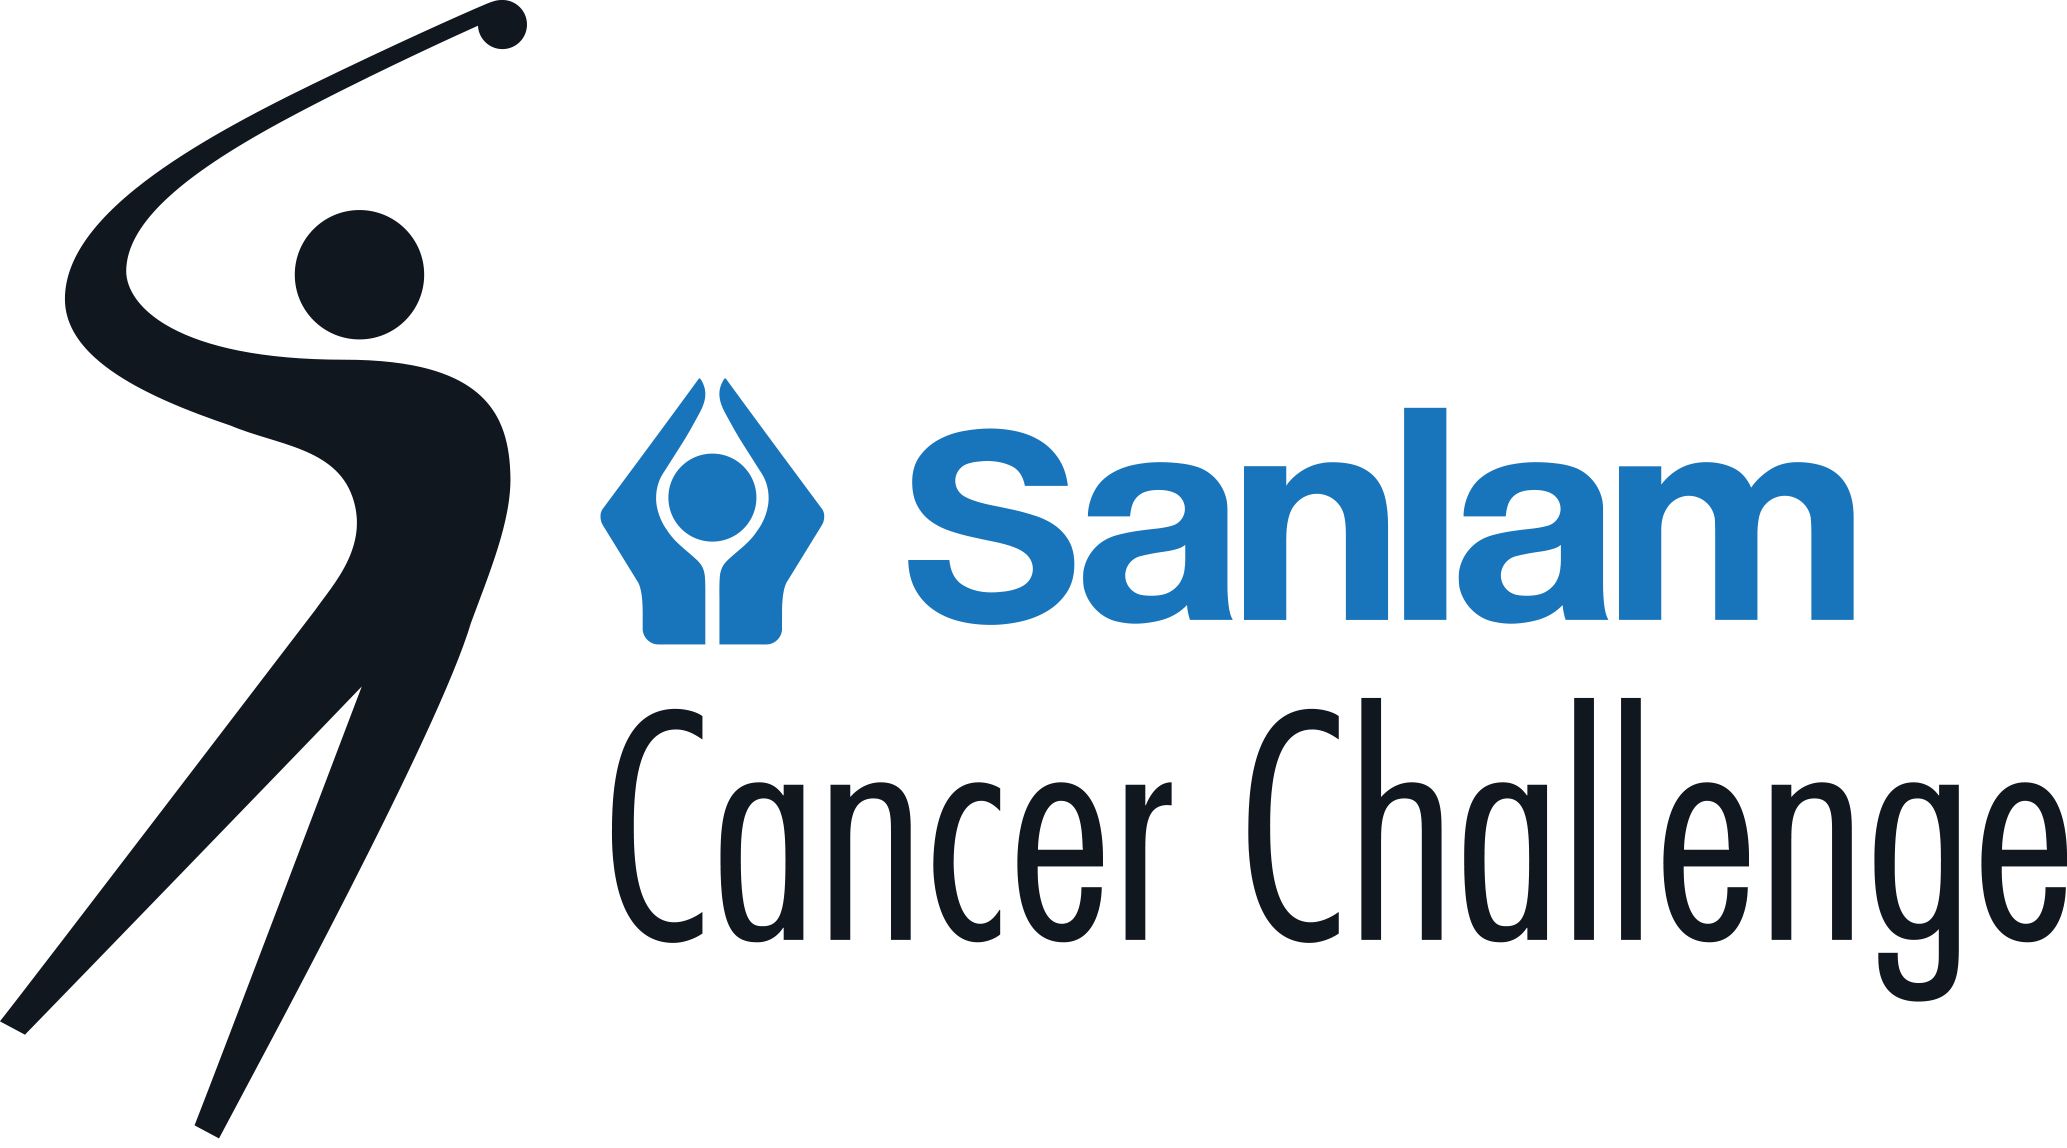 Updated Sanlam Cancer Challenge logo